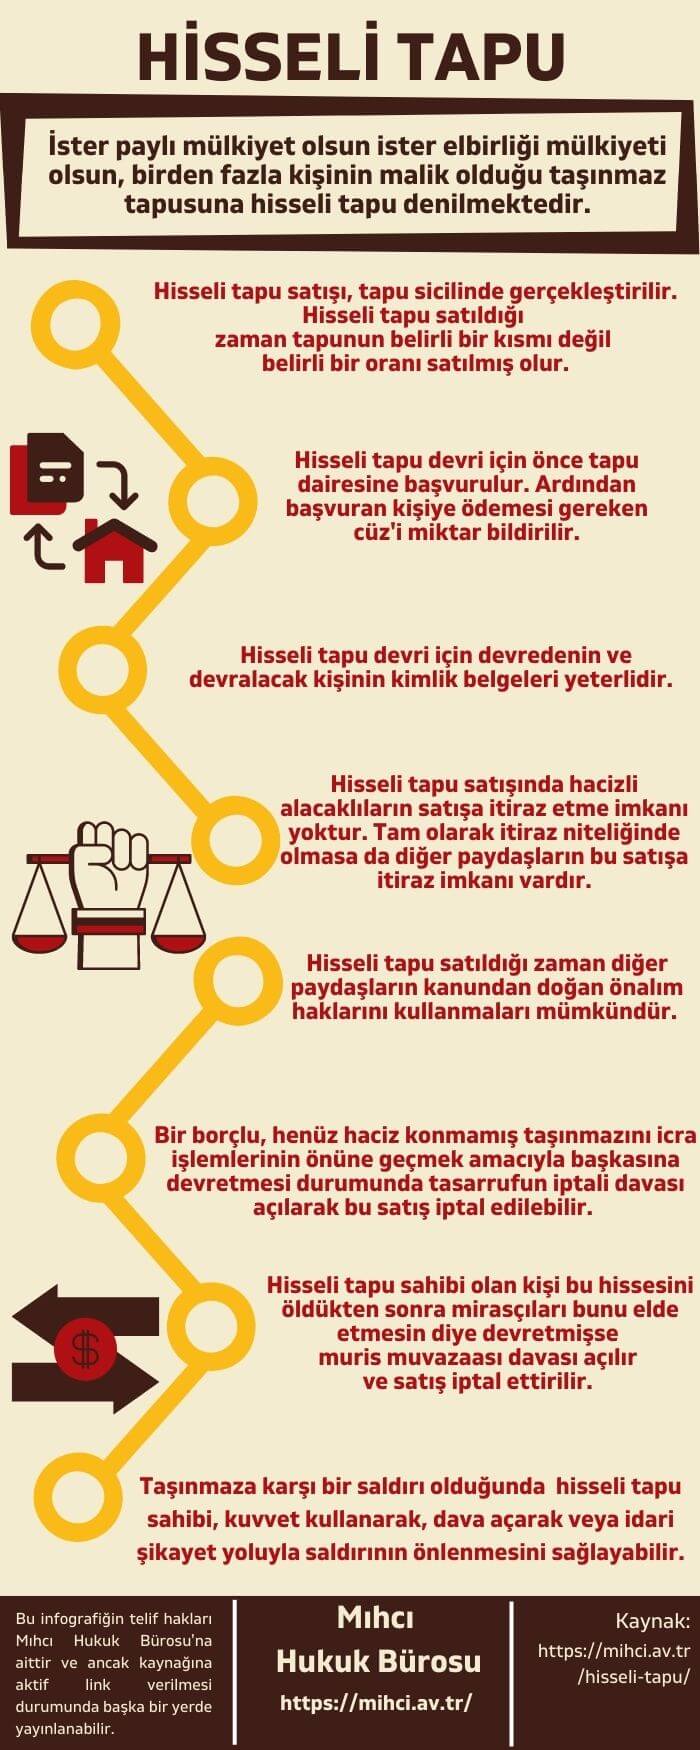 Hisseli Tapu infografik